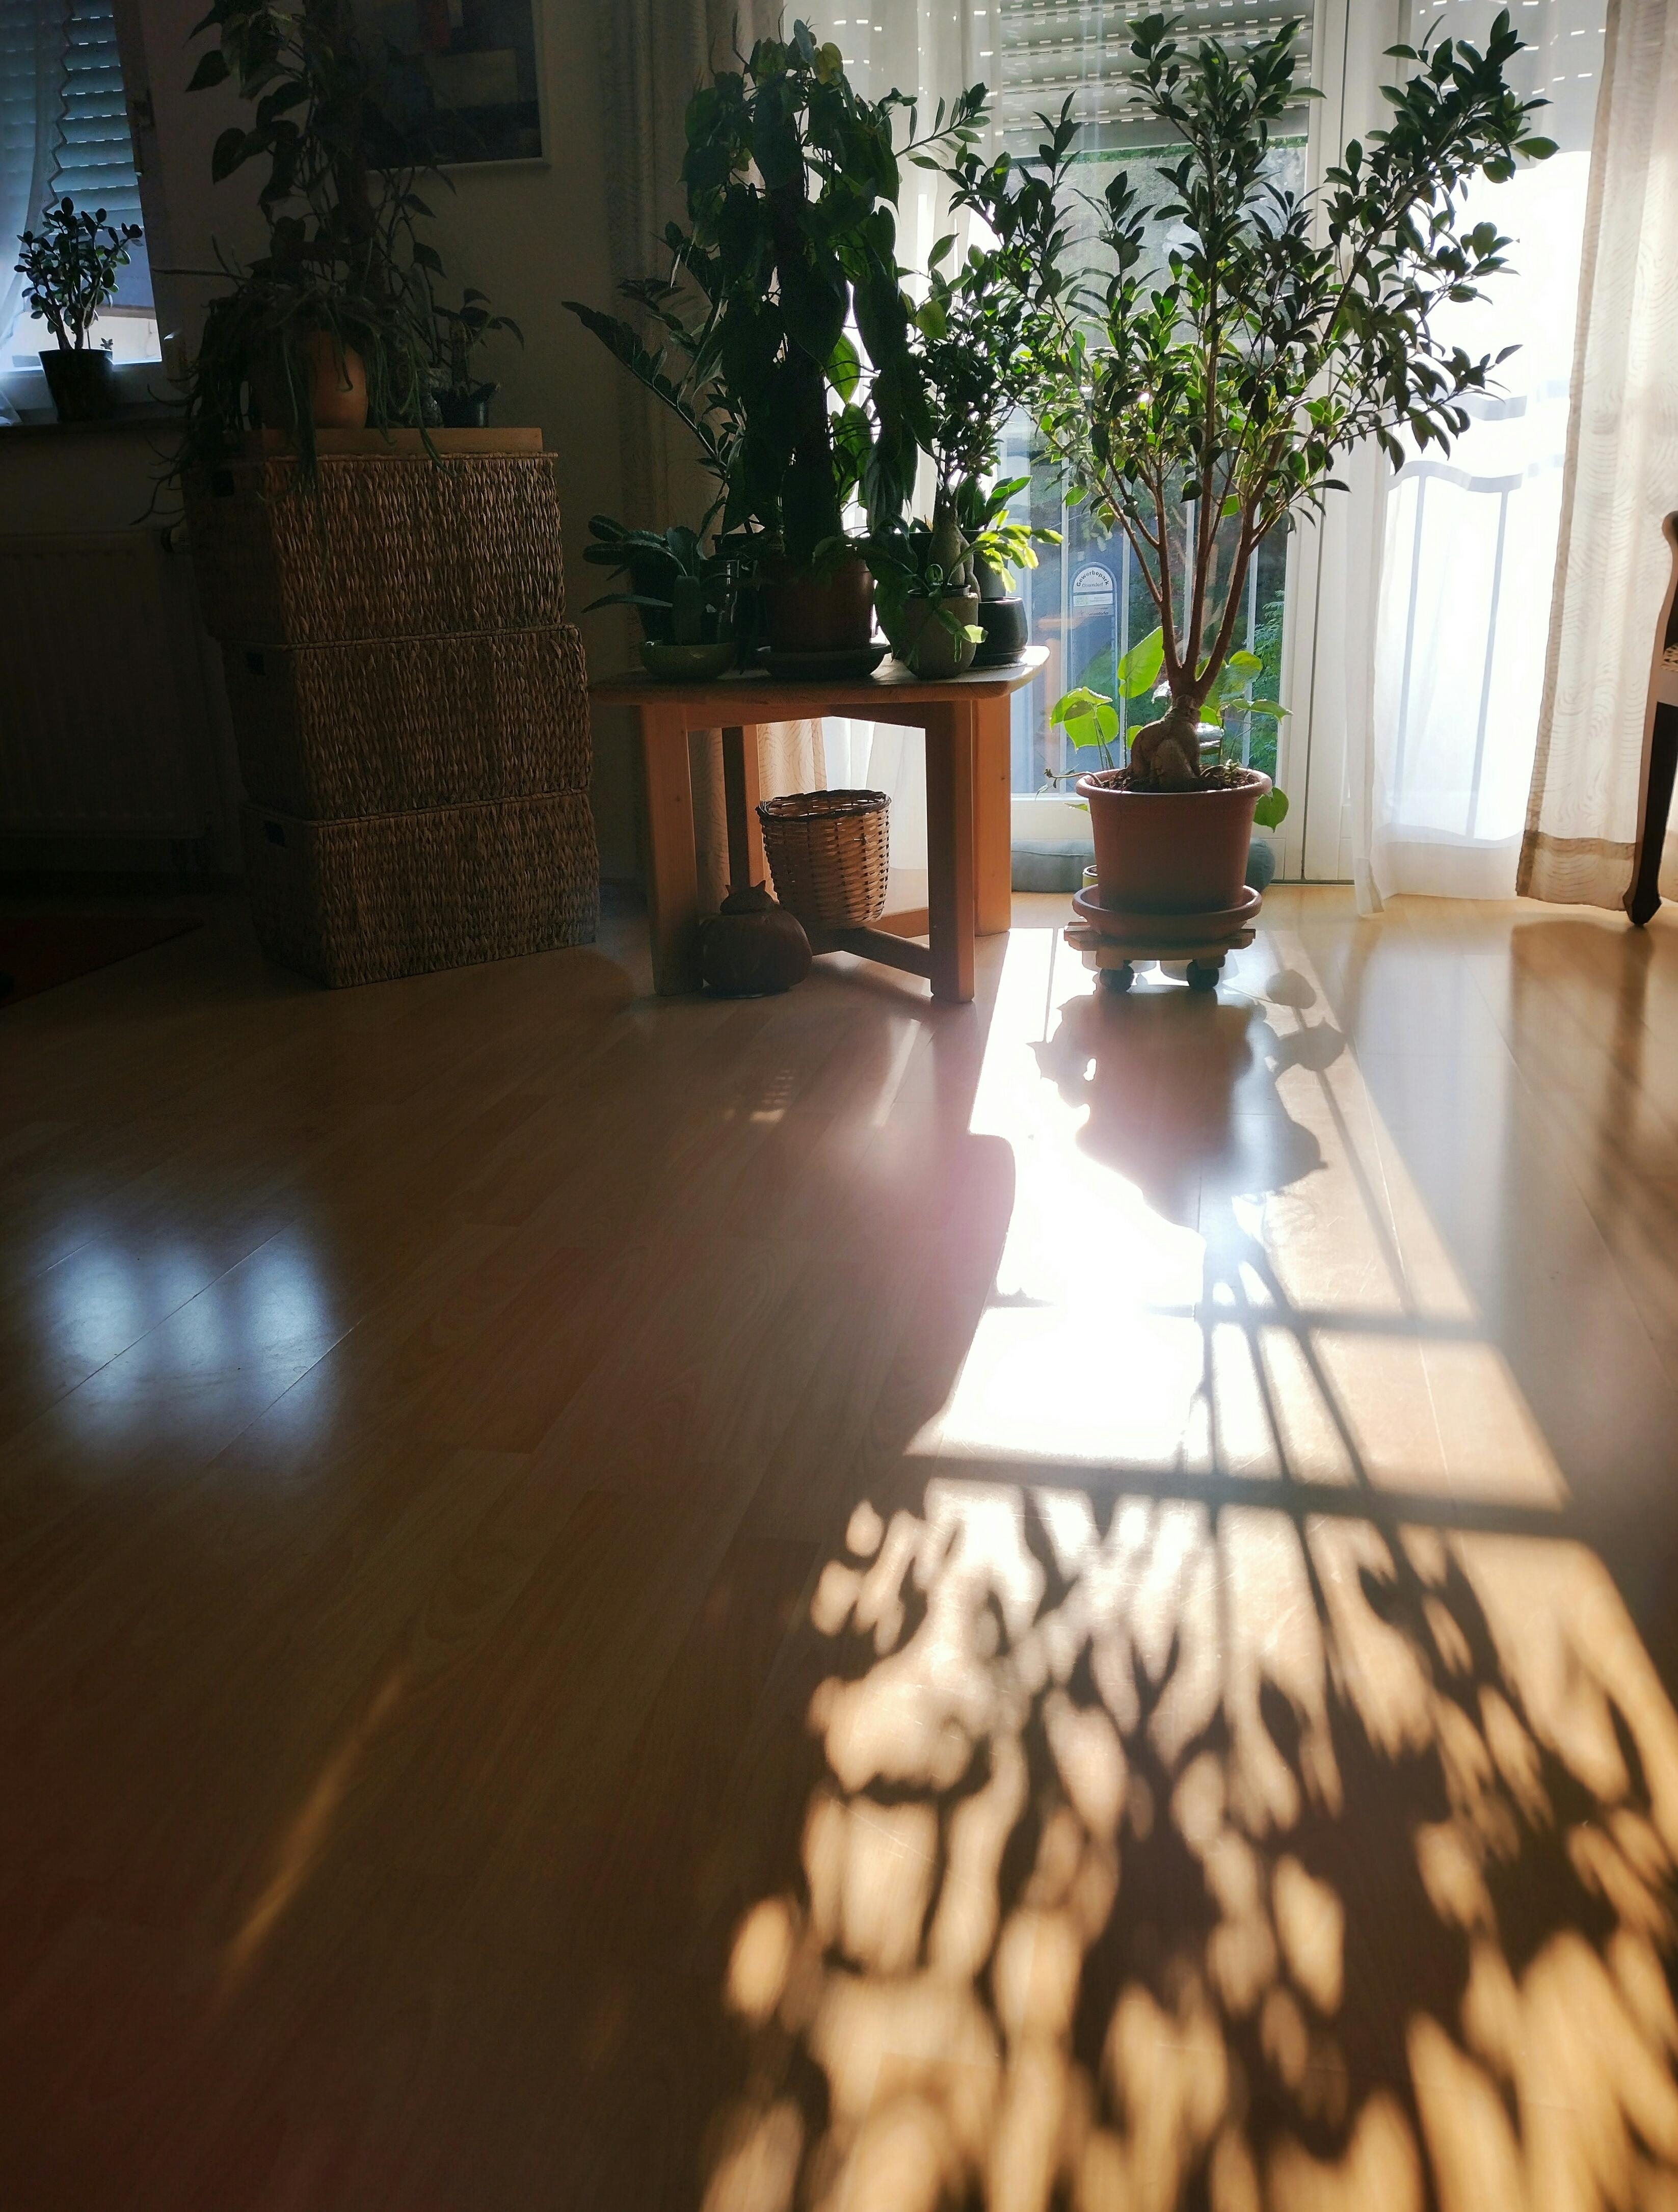 Schattenspiel am Spätnachmittag #wohnzimmer #pflanzen #pflanzenliebe #tisch #körbe #parkettboden #licht #schatten